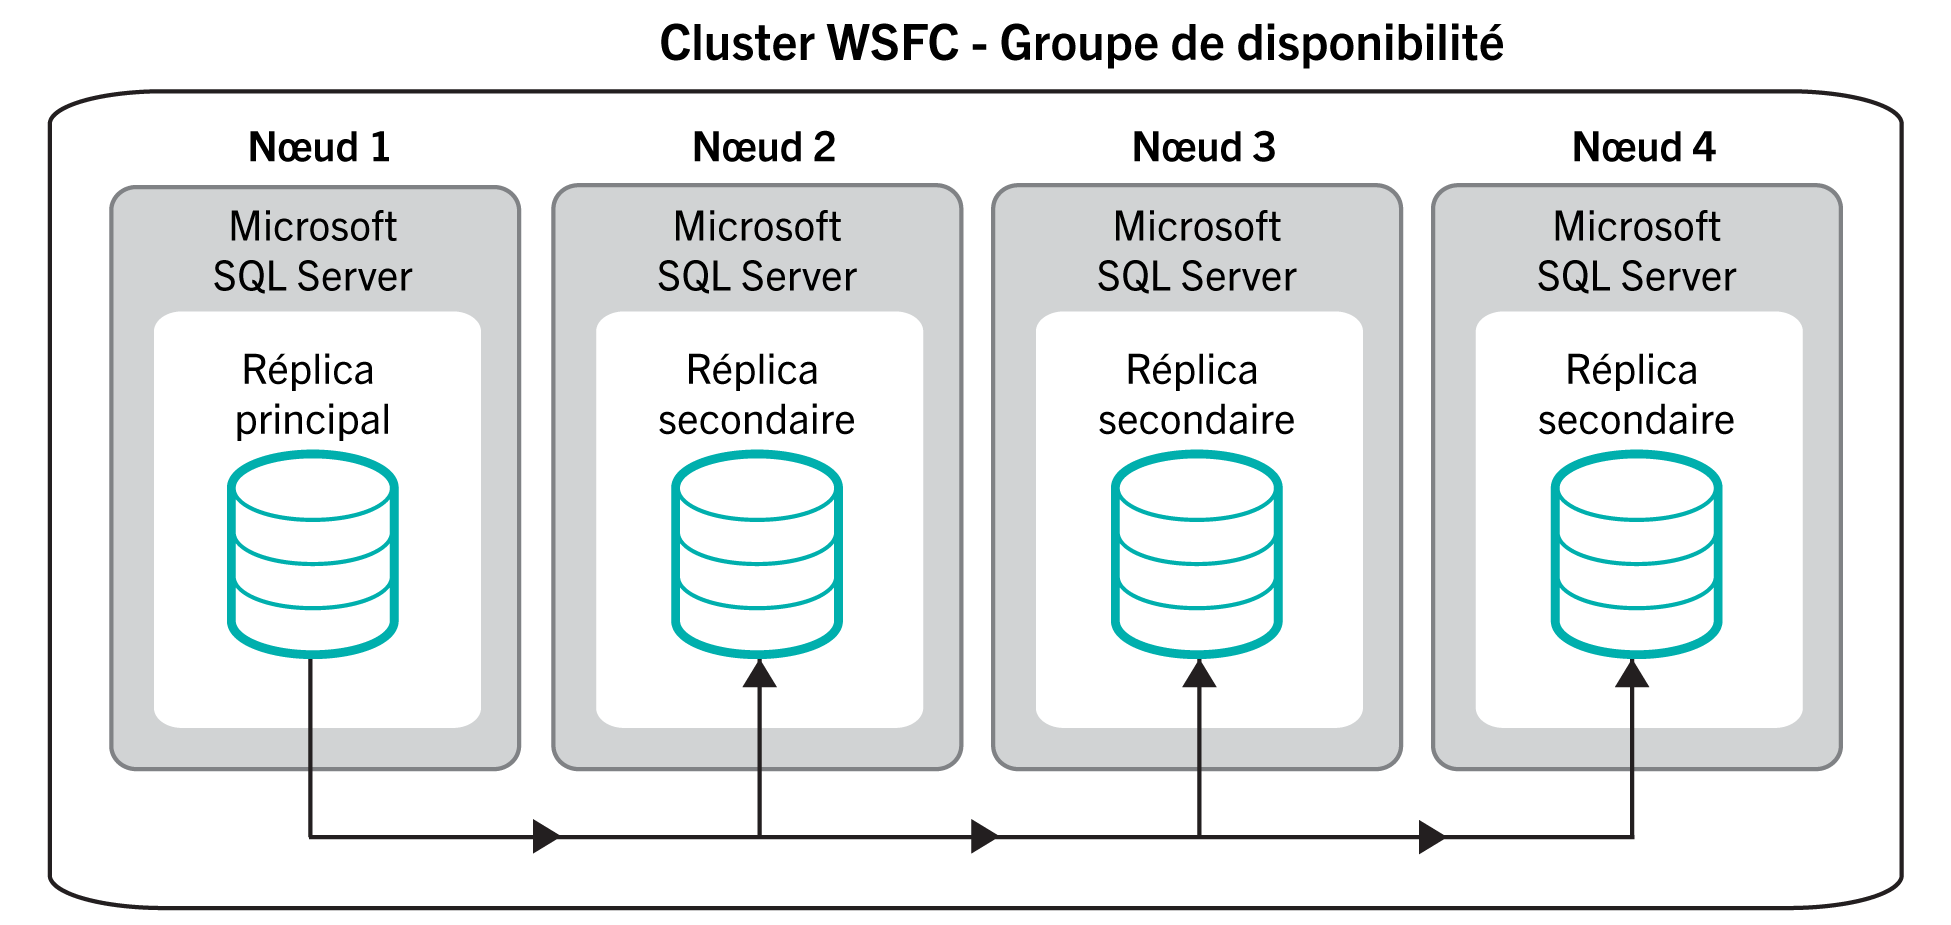 Ce schéma illustre les différents nœuds Microsoft SQL
  Server d‘un groupe de disponibilité de base de données haute disponibilité